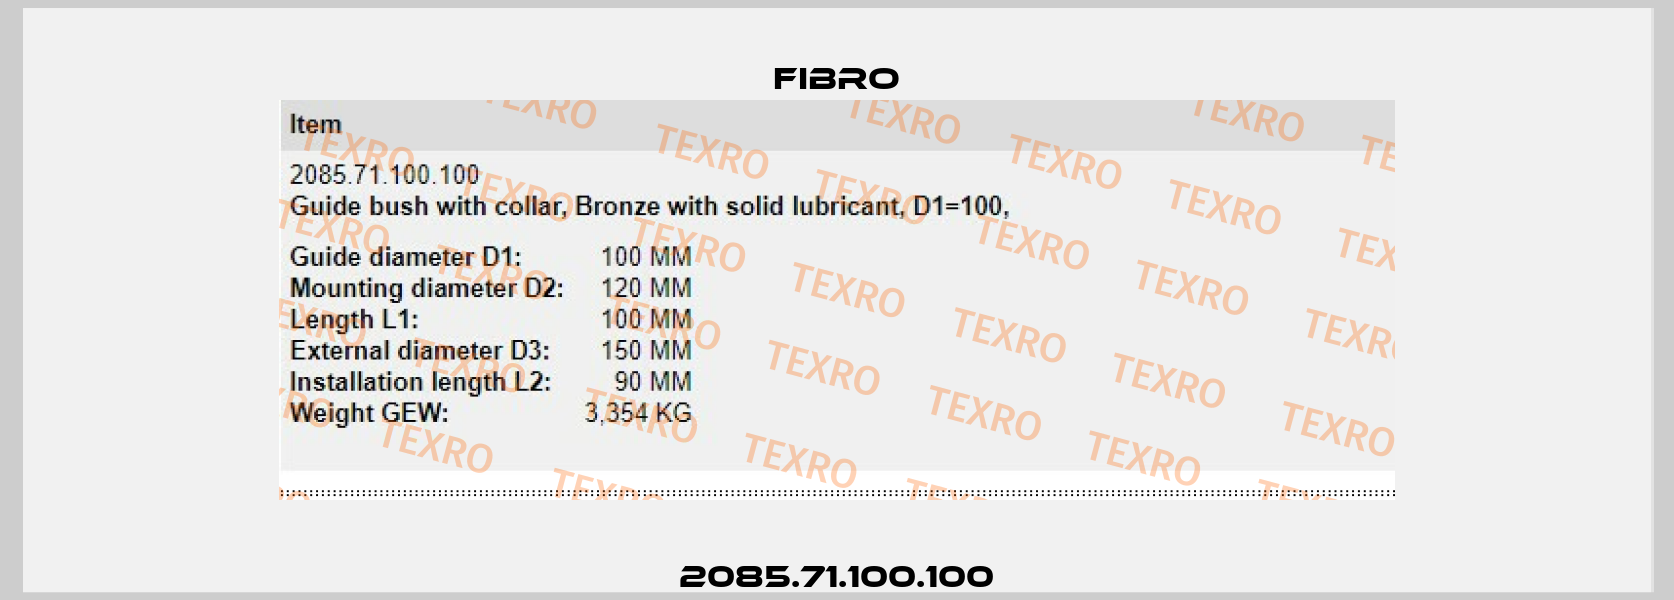 2085.71.100.100 Fibro